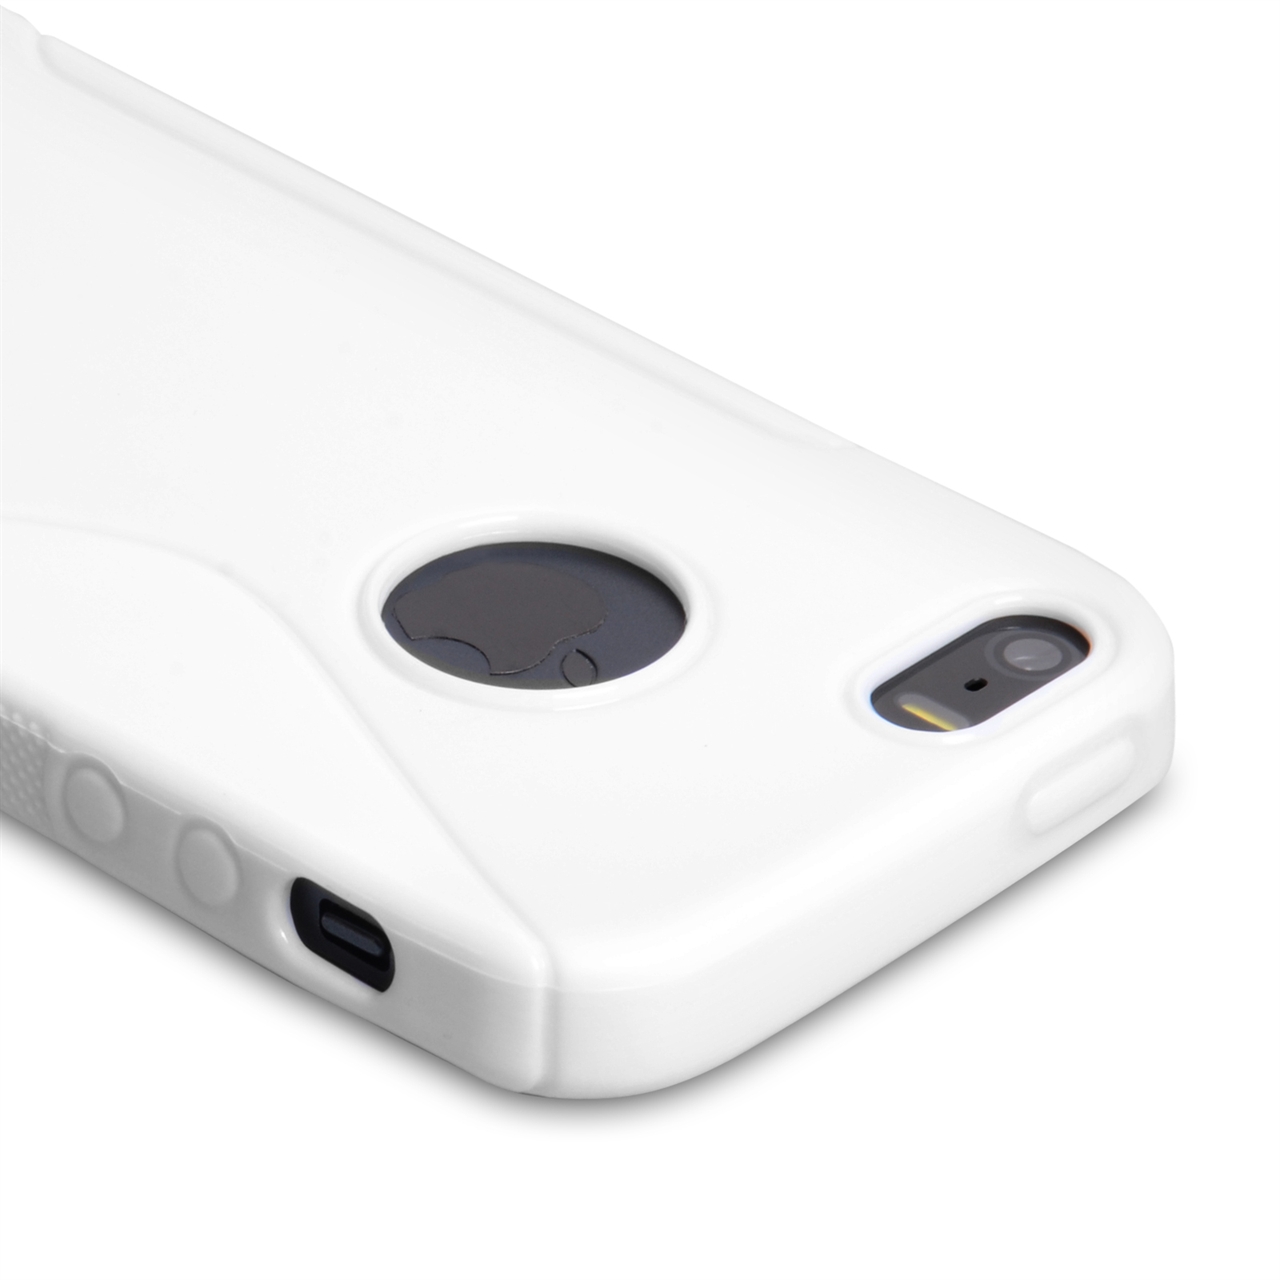 Caseflex iPhone SE S-Line Gel Case - White